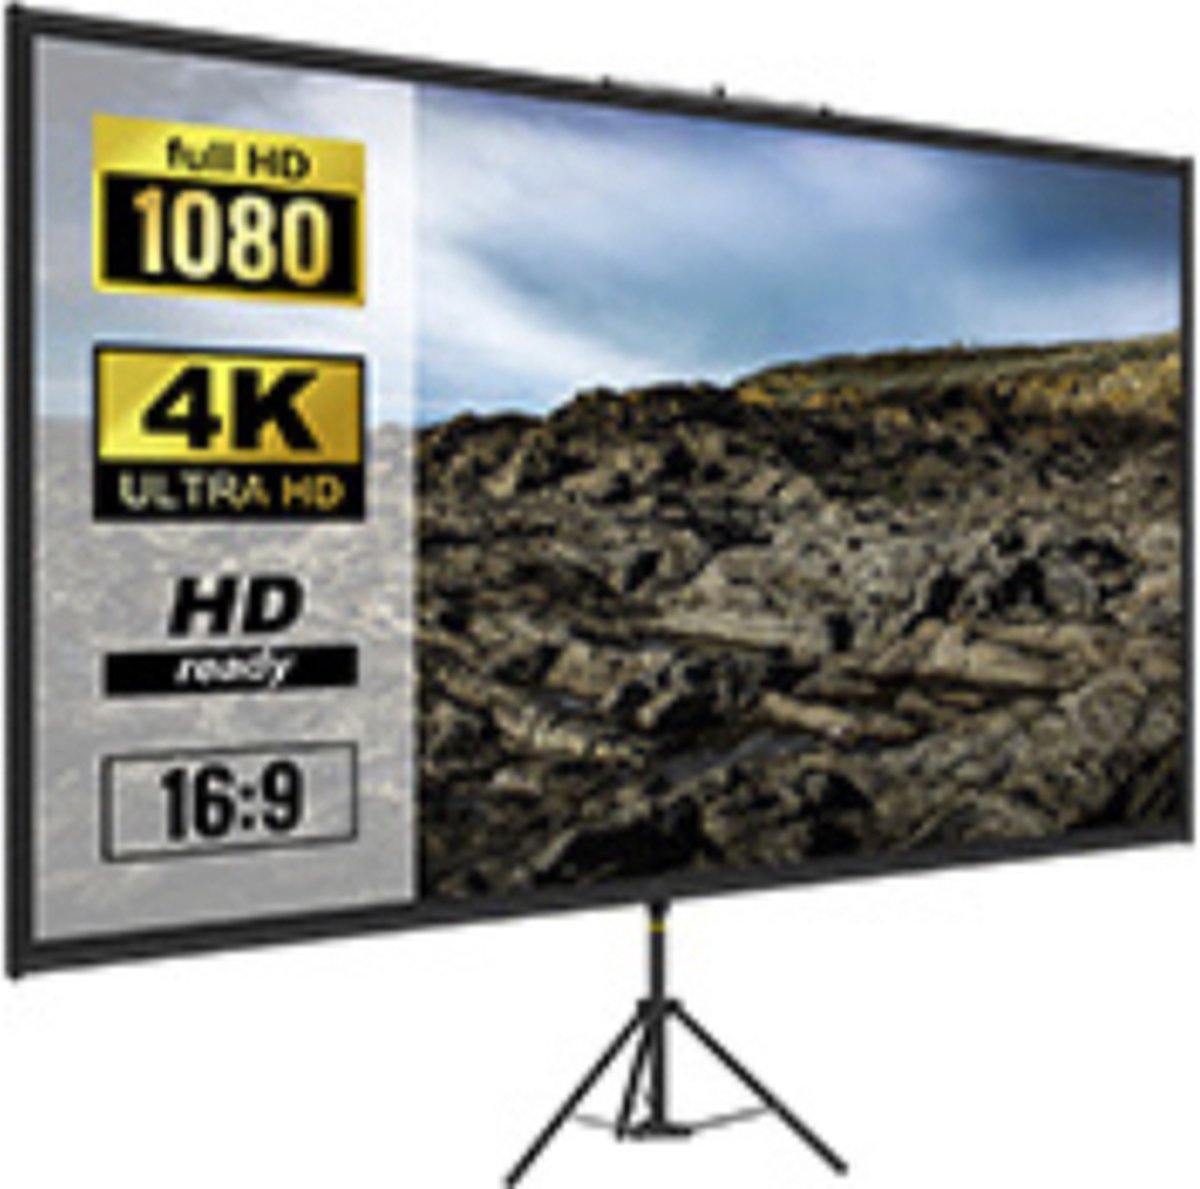 110 Inch Statief Projector Screen - W Stand 16:9 - 4K HD - Beamer scherm - Home Cinema - Thuisbioscoop Indoor & Outdoor projectie - Thuisbioscoop